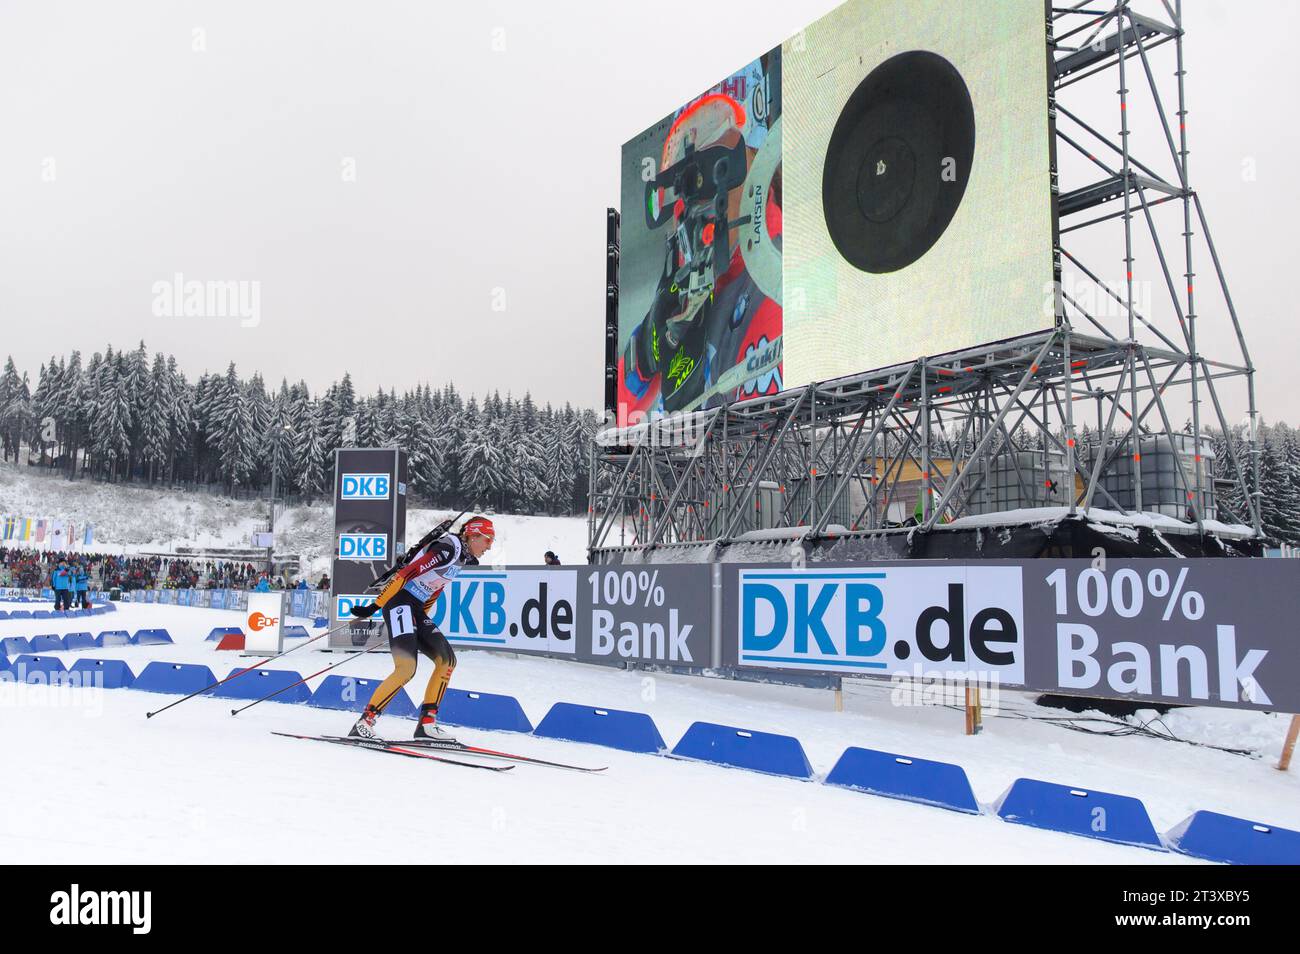 Luise Kummer AKTION Biathlon Welt Cup 4 x 6 KM Staffel der Frauen in Oberhof, Deutschland am 07.01.2015 Stock Photo